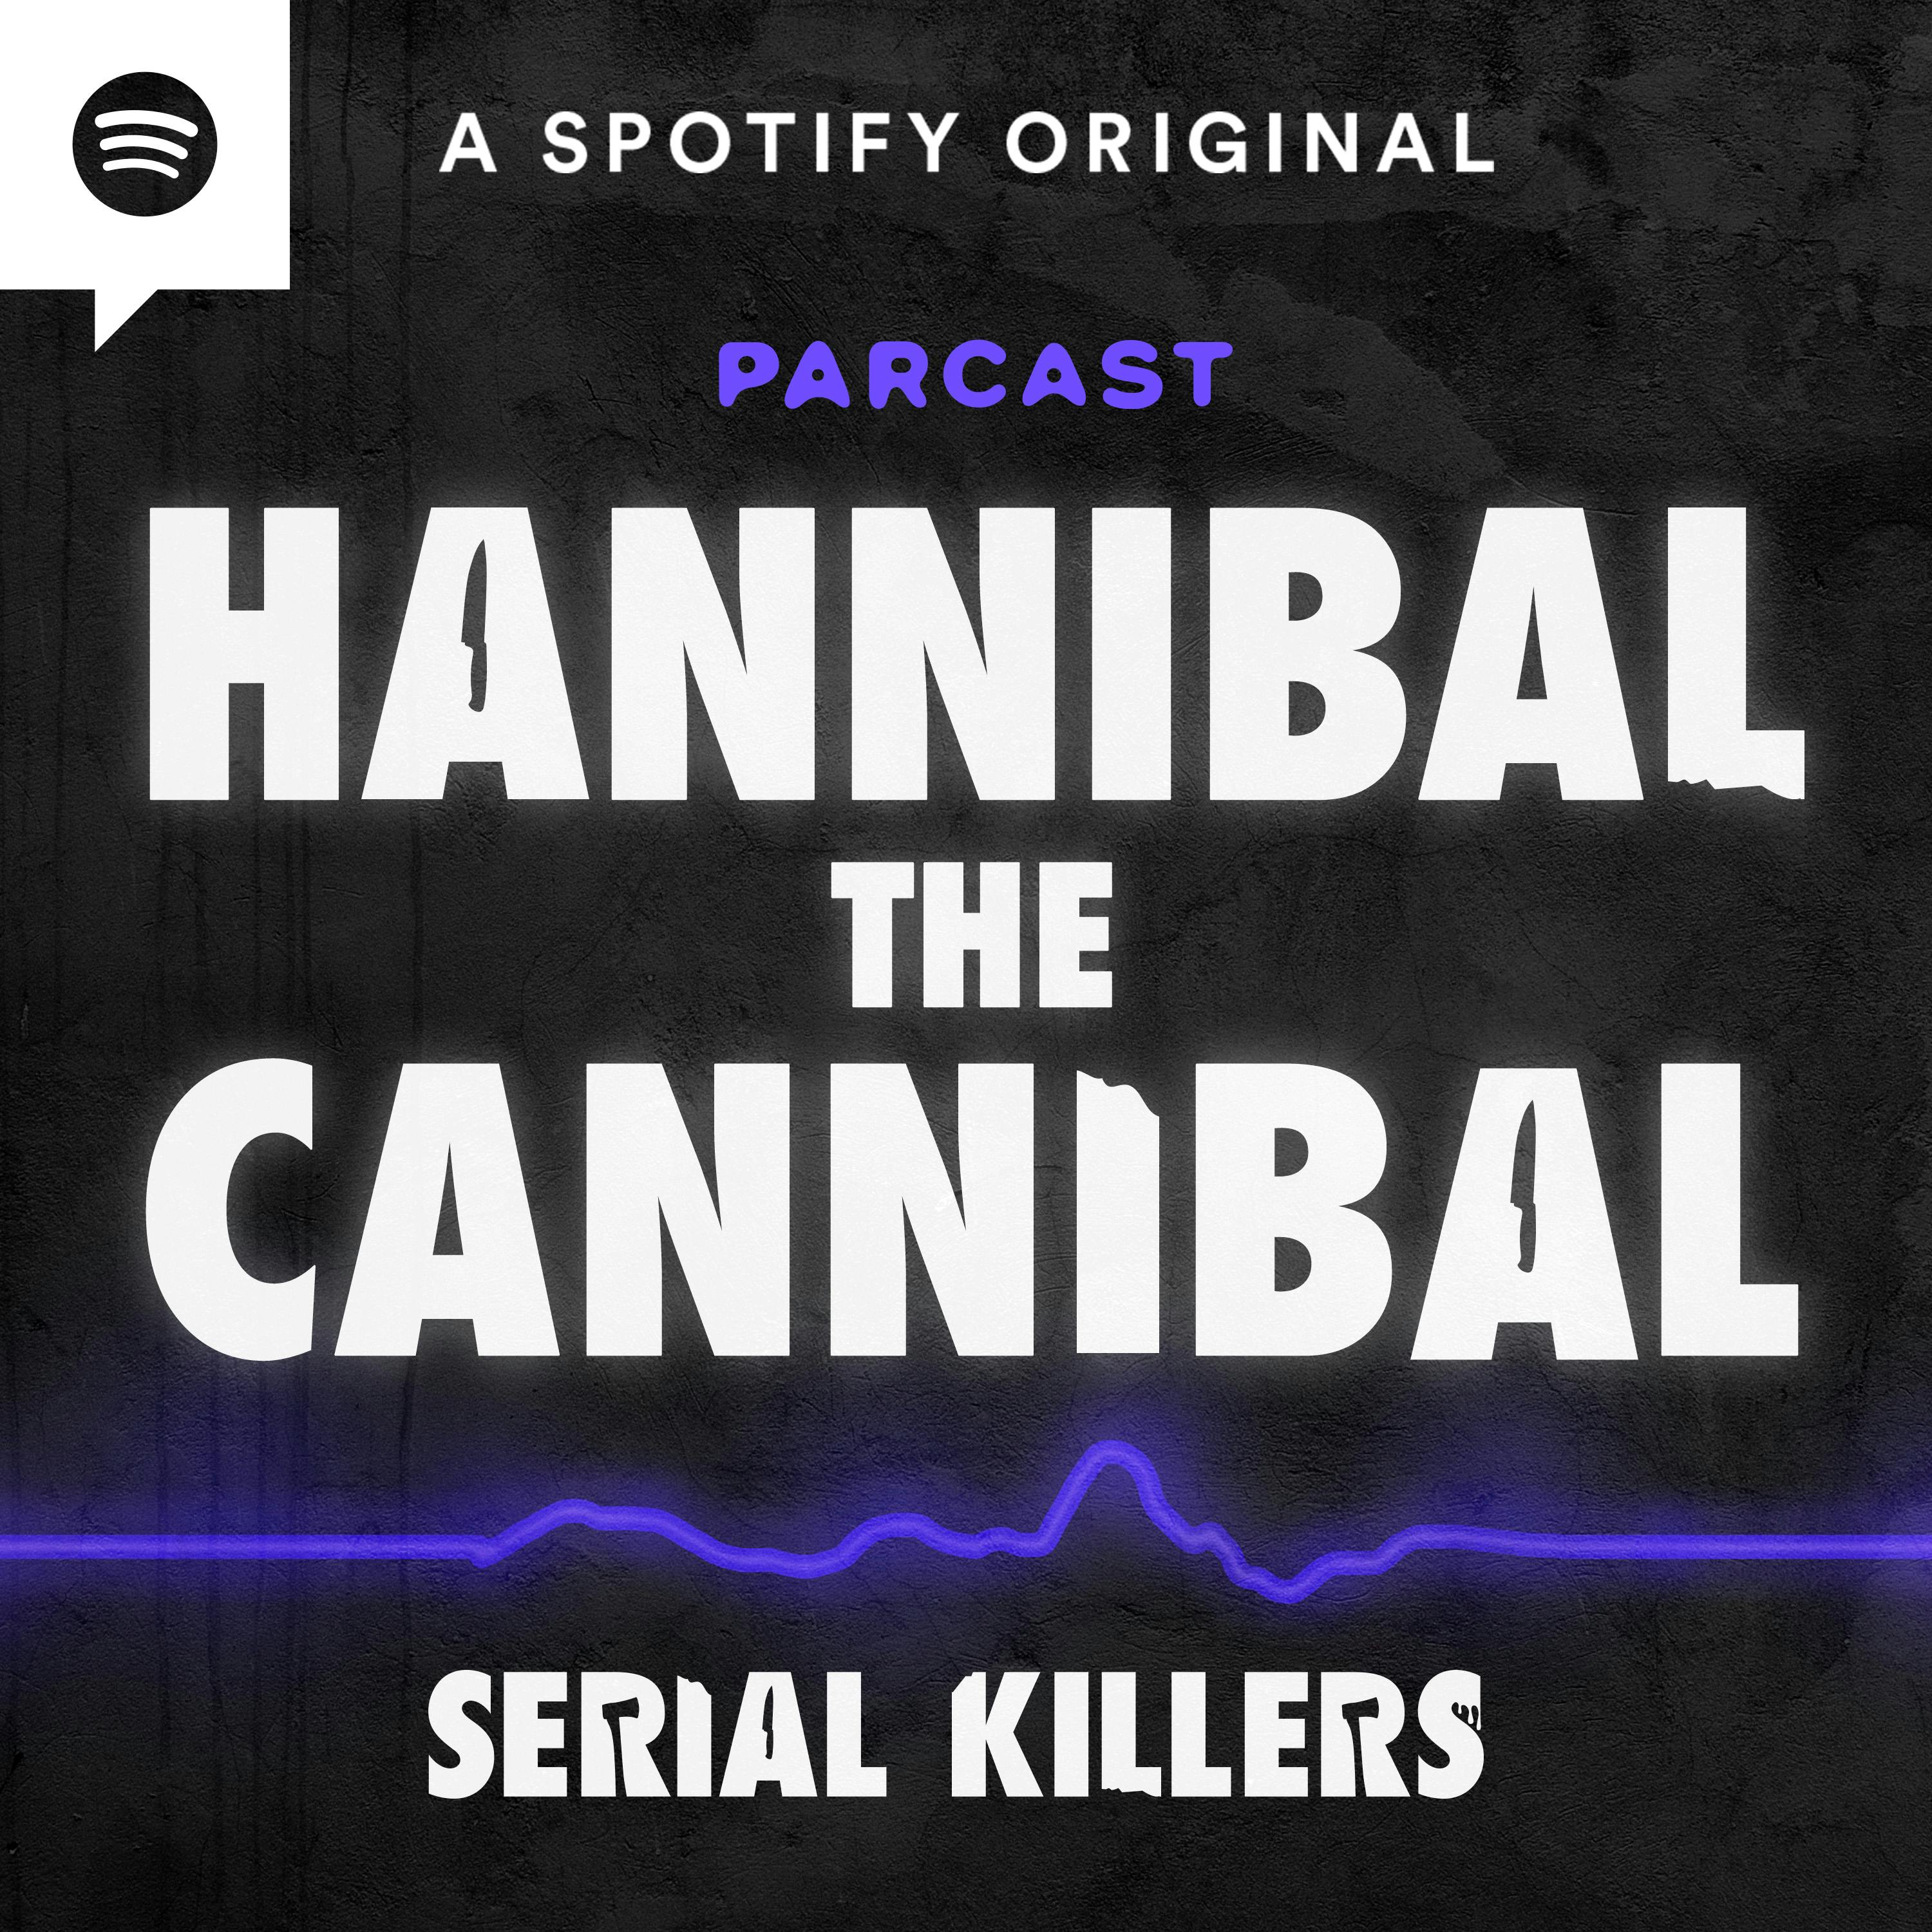 “Hannibal the Cannibal” Robert John Maudsley Pt. 2